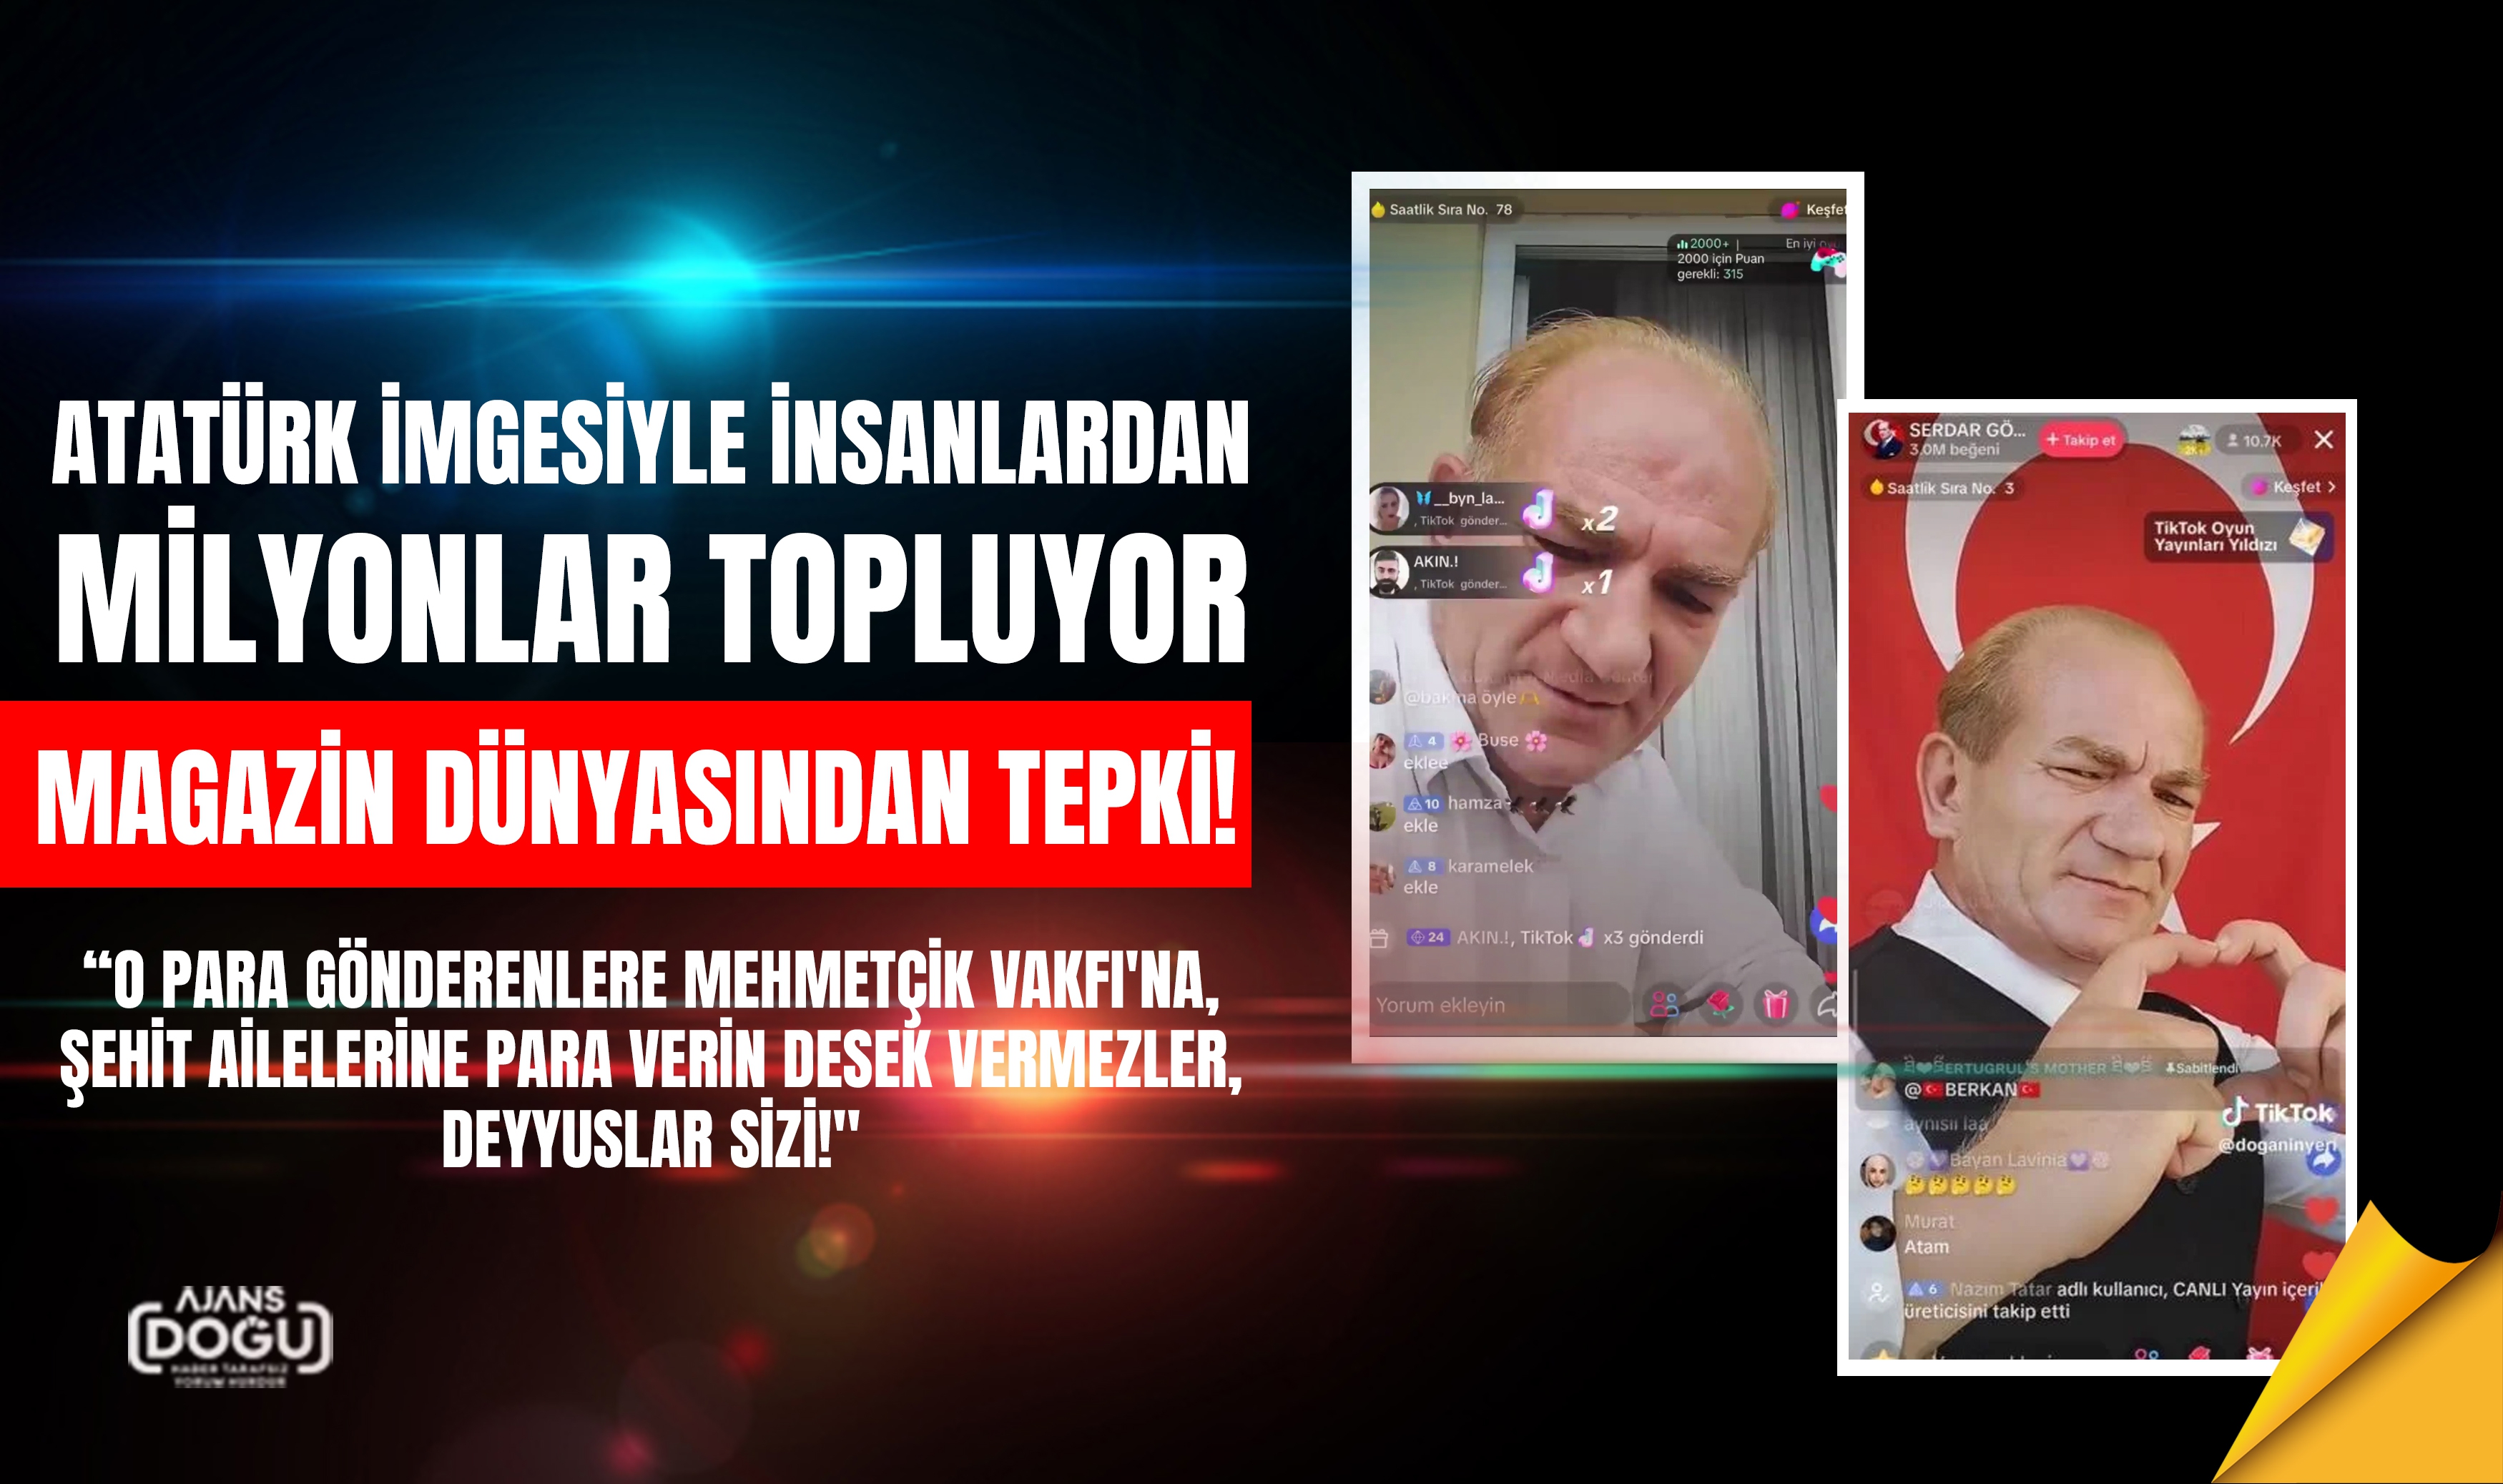 Çakma Atatürk İmgesiyle  Milyonlar Topluyor: Magazin Dünyasından Tepki!